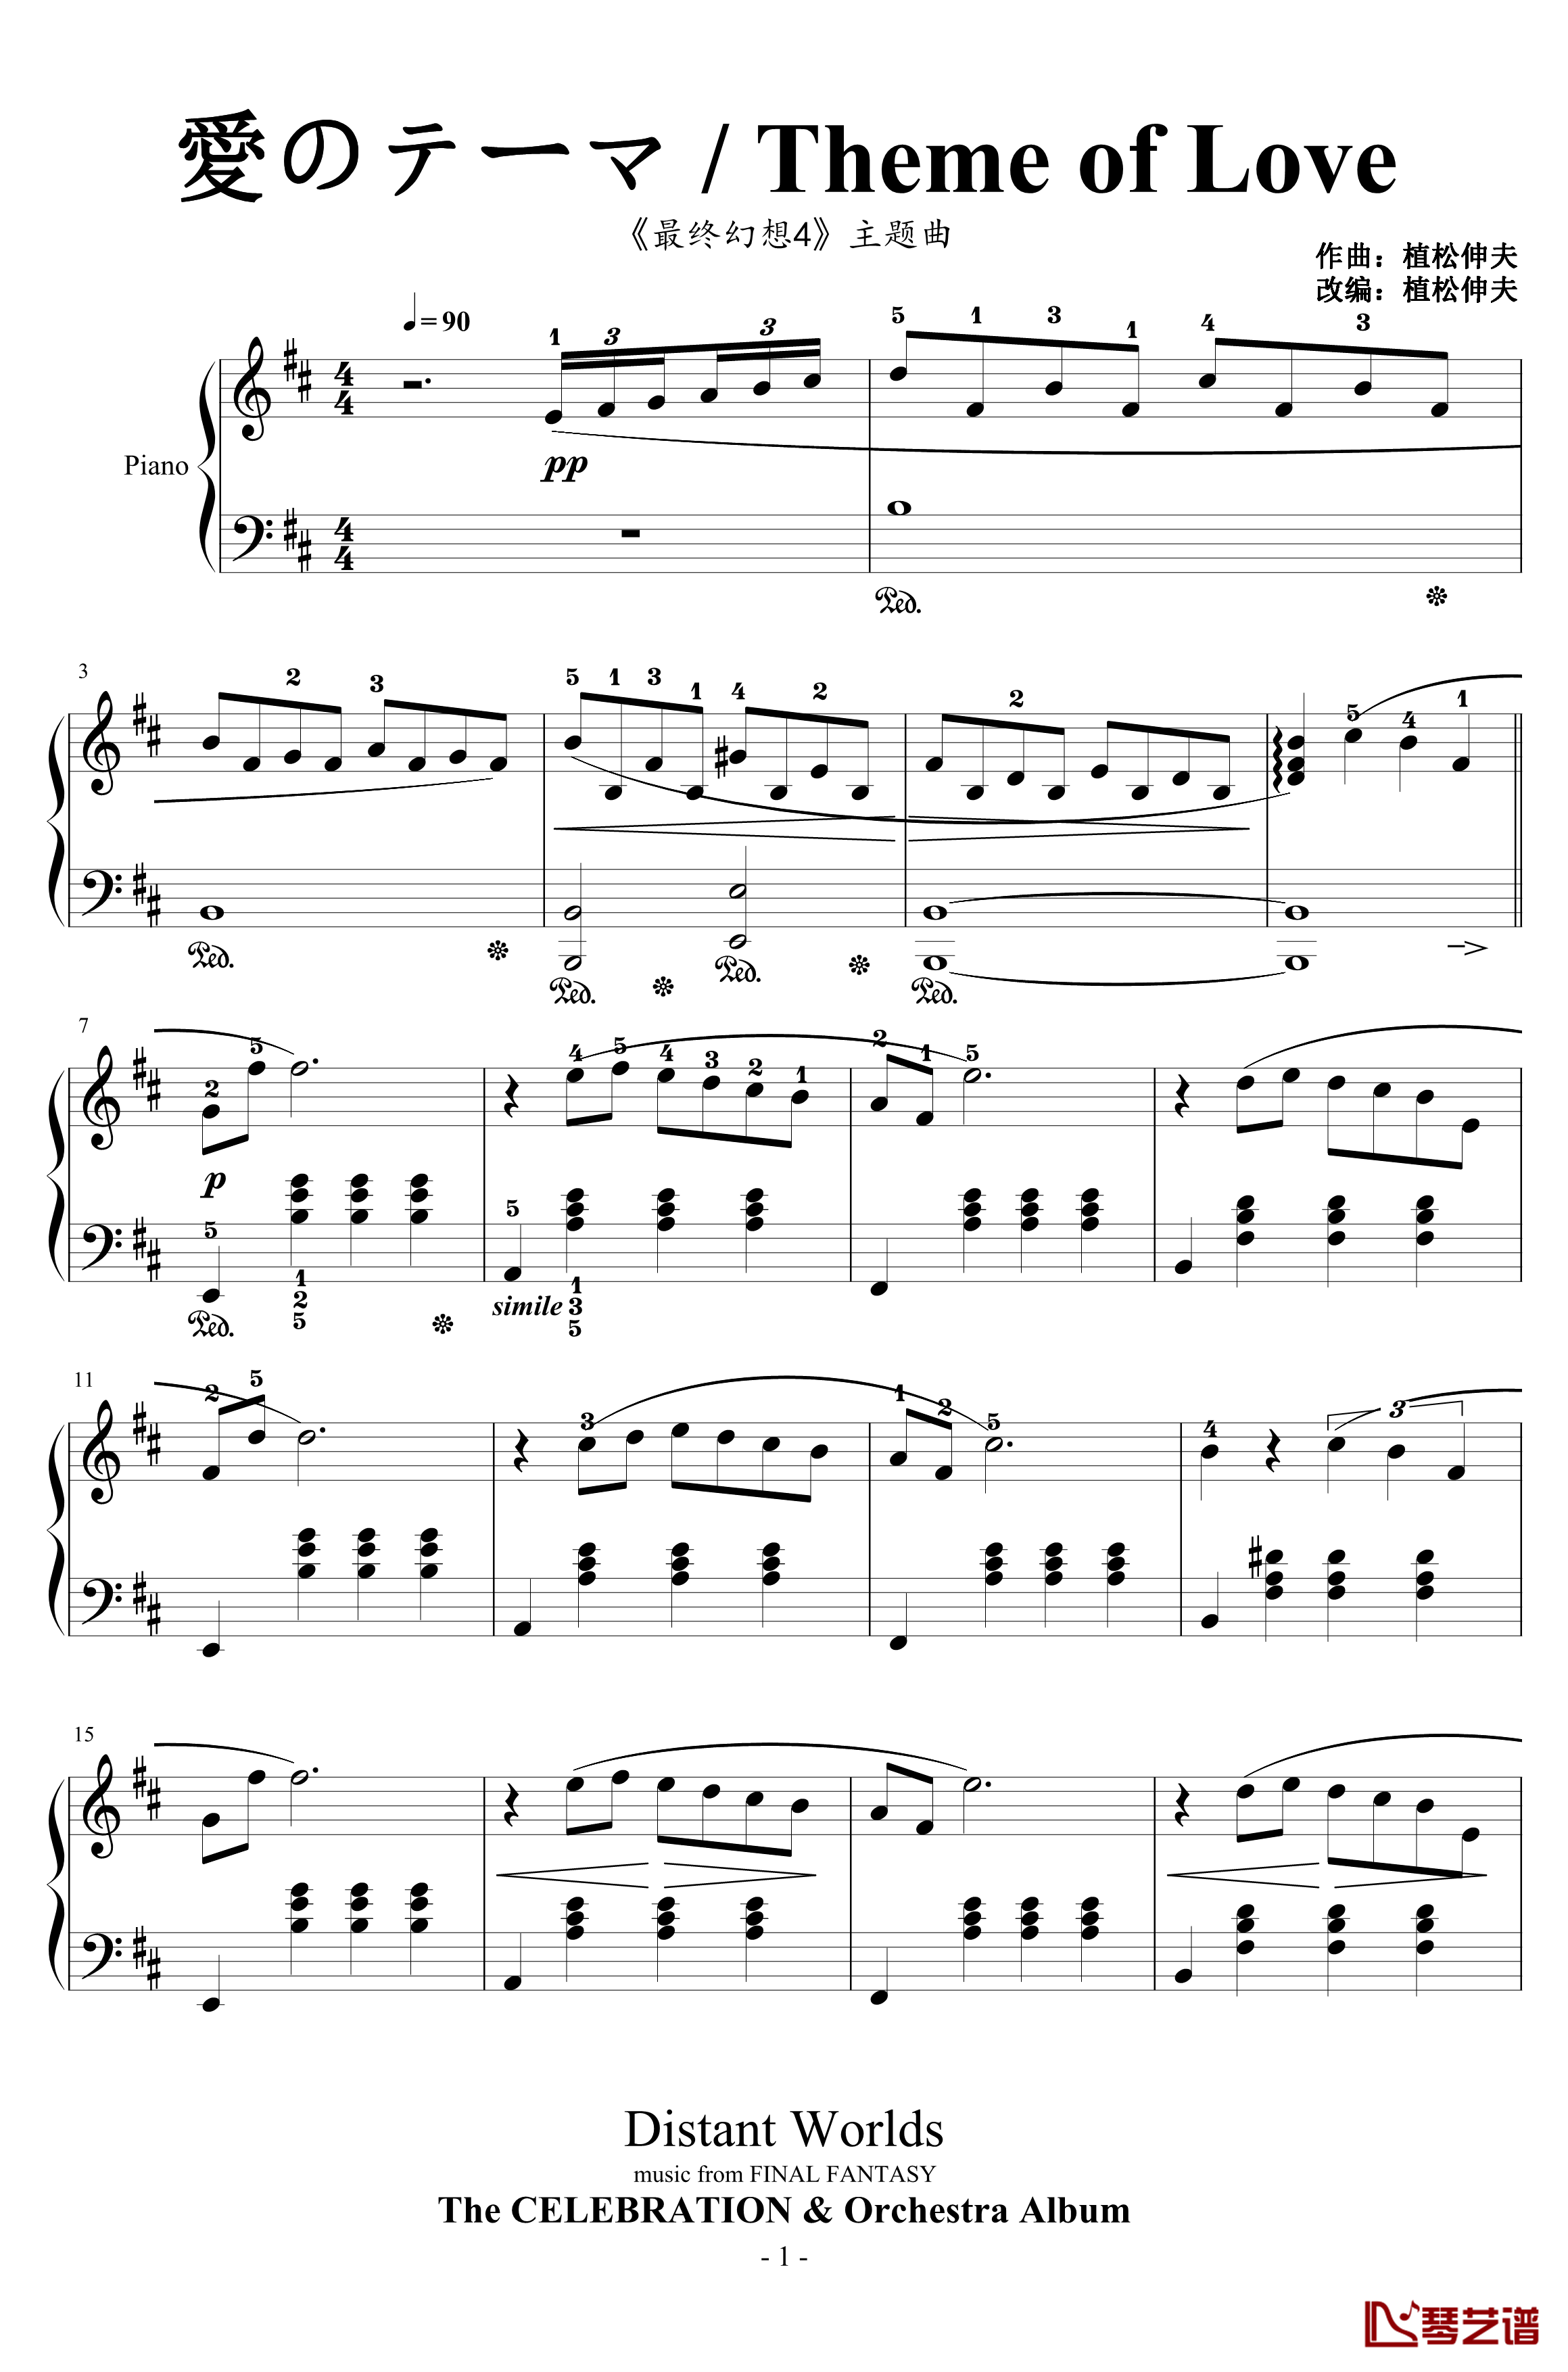 最终幻想4爱的主题钢琴谱-交响乐版改编-植松伸夫1